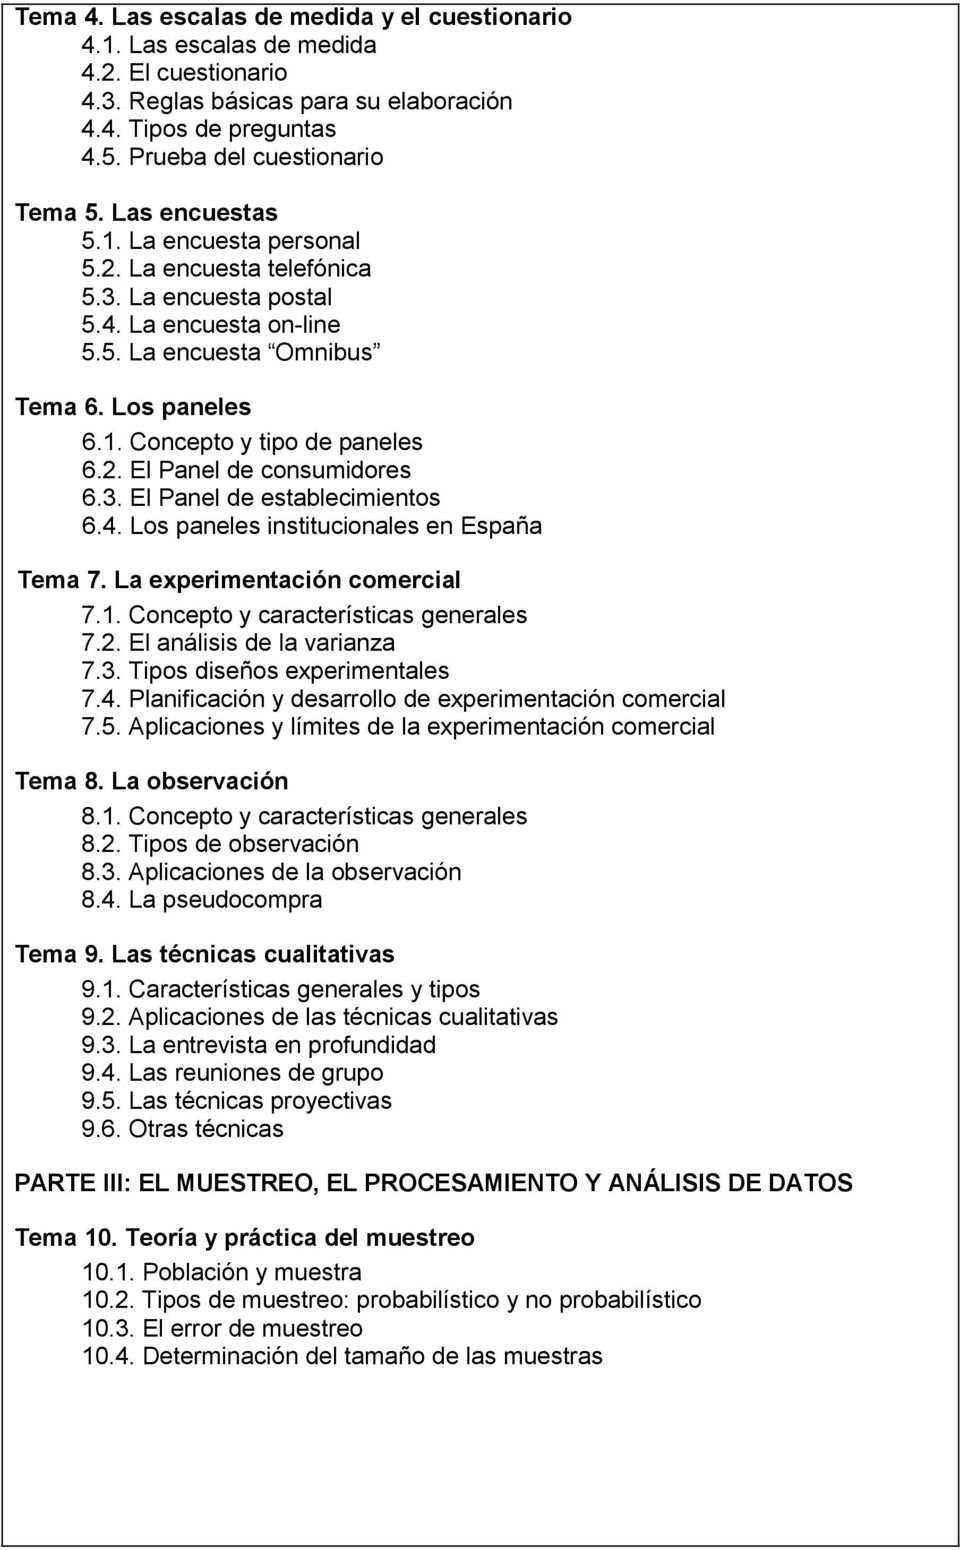 3. El Panel de establecimientos 6.4. Los paneles institucionales en España Tema 7. La experimentación comercial 7.1. Concepto y características generales 7.2. El análisis de la varianza 7.3. Tipos diseños experimentales 7.